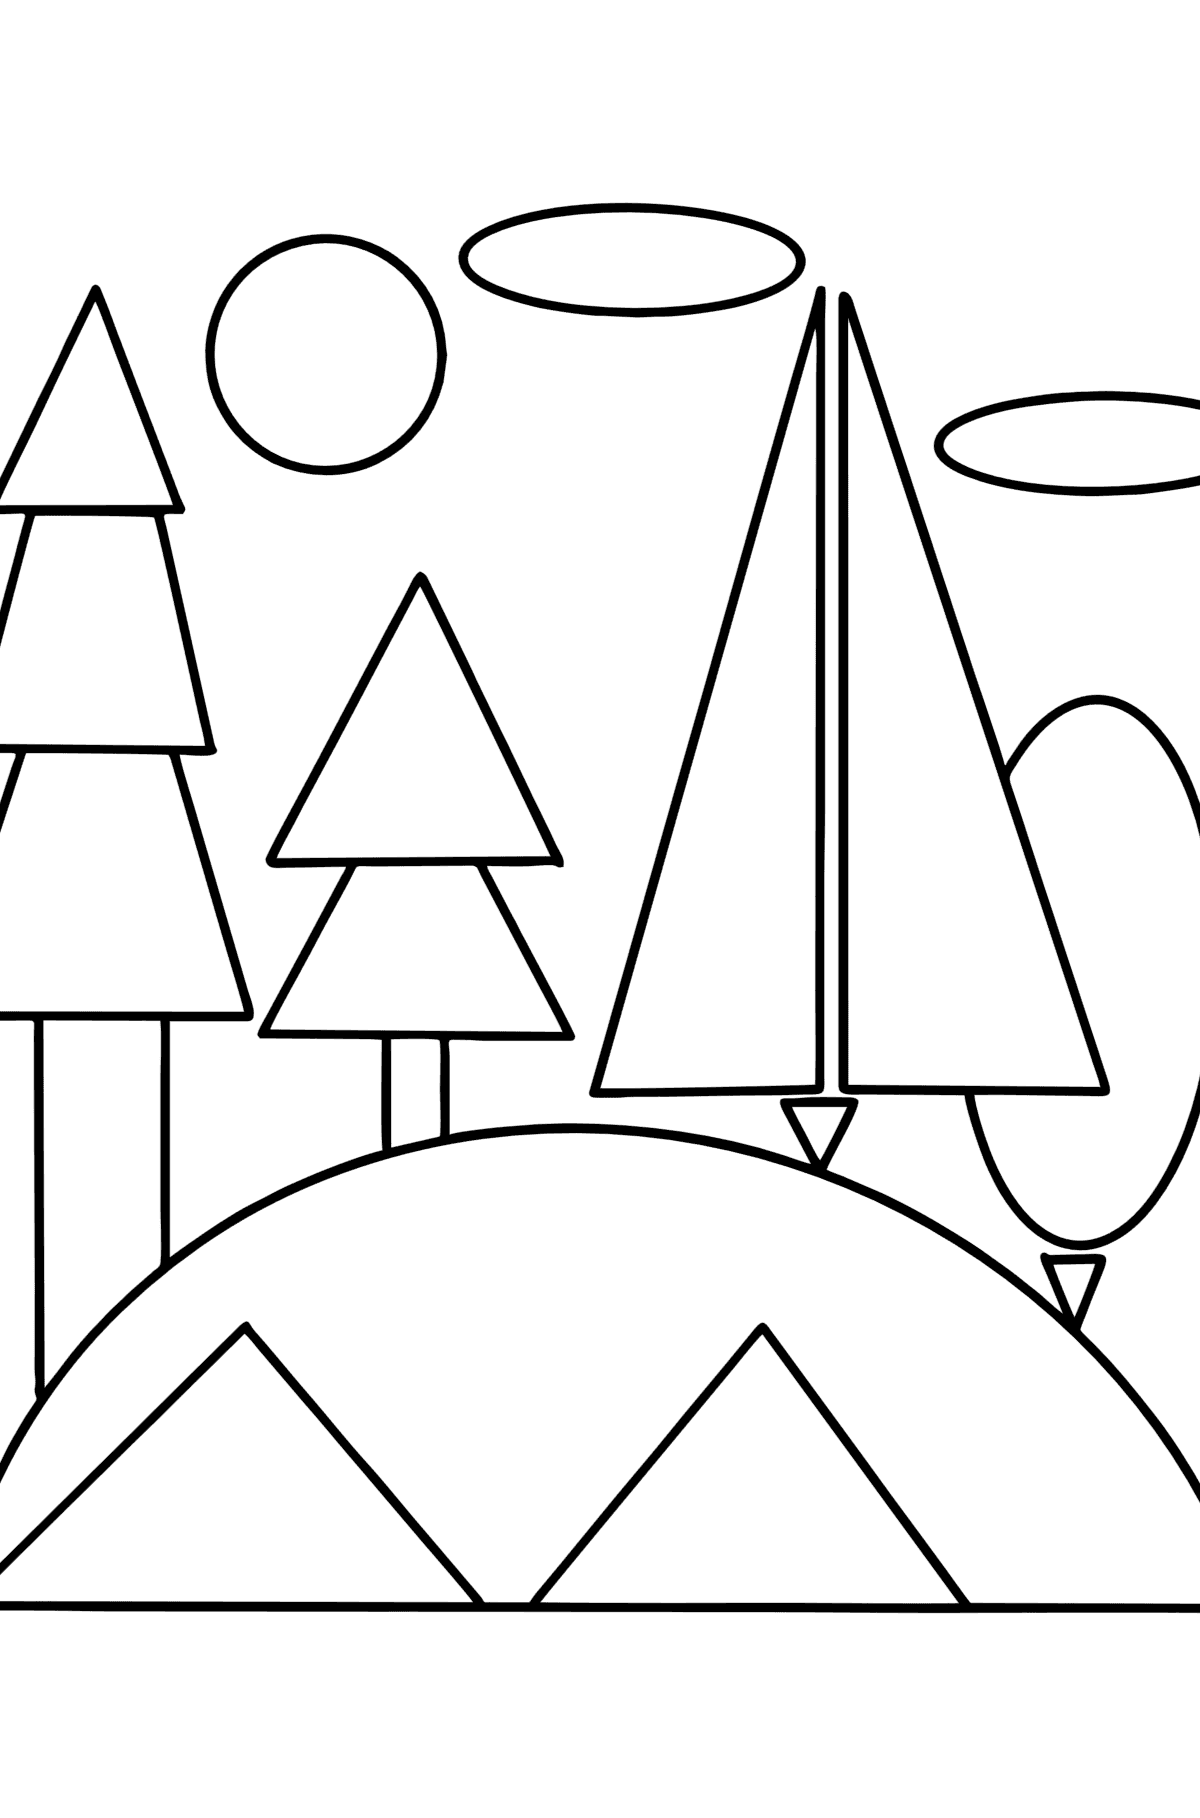 Boyama sayfası geometrik şekiller - orman - Boyamalar çocuklar için